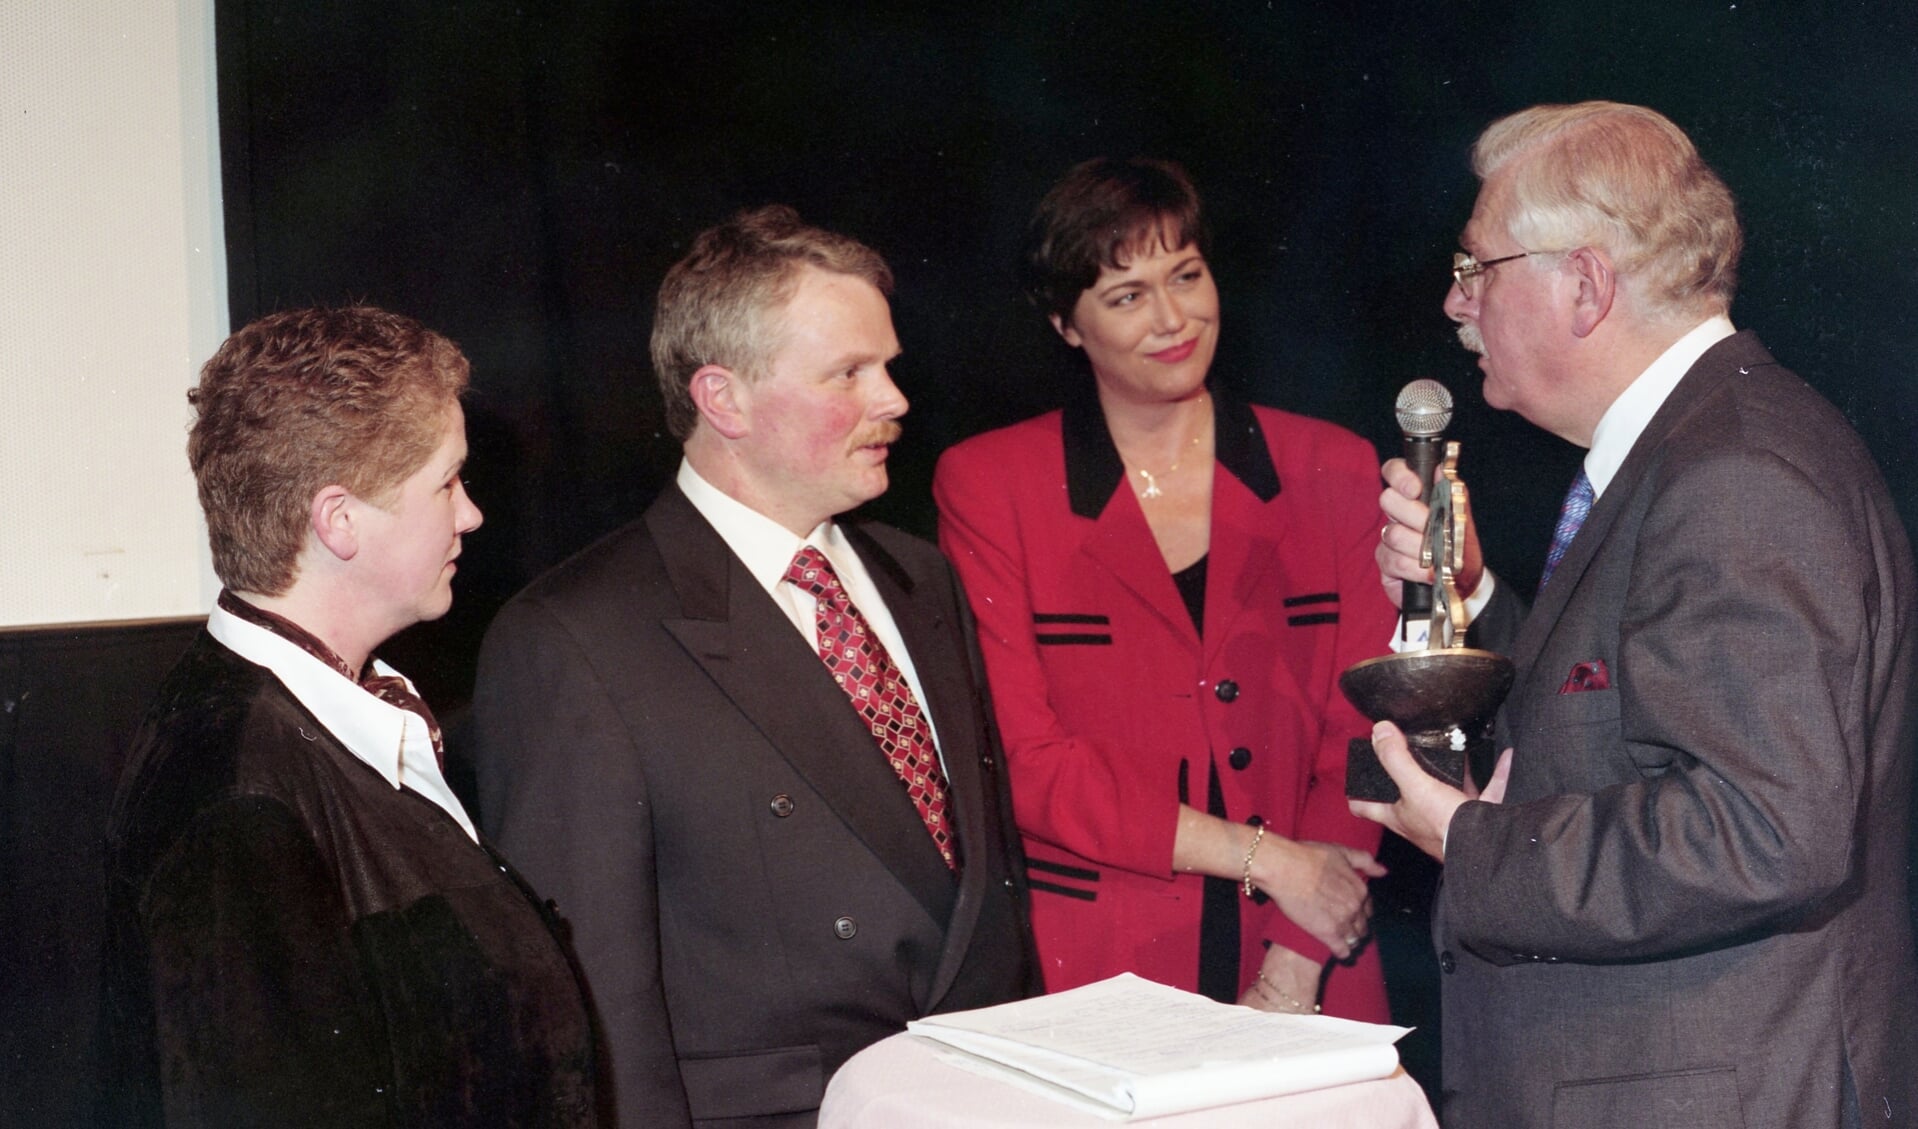 De eerste Ondernemersprijs werd in 1996 uitgereikt aan slagerij Meulepas.